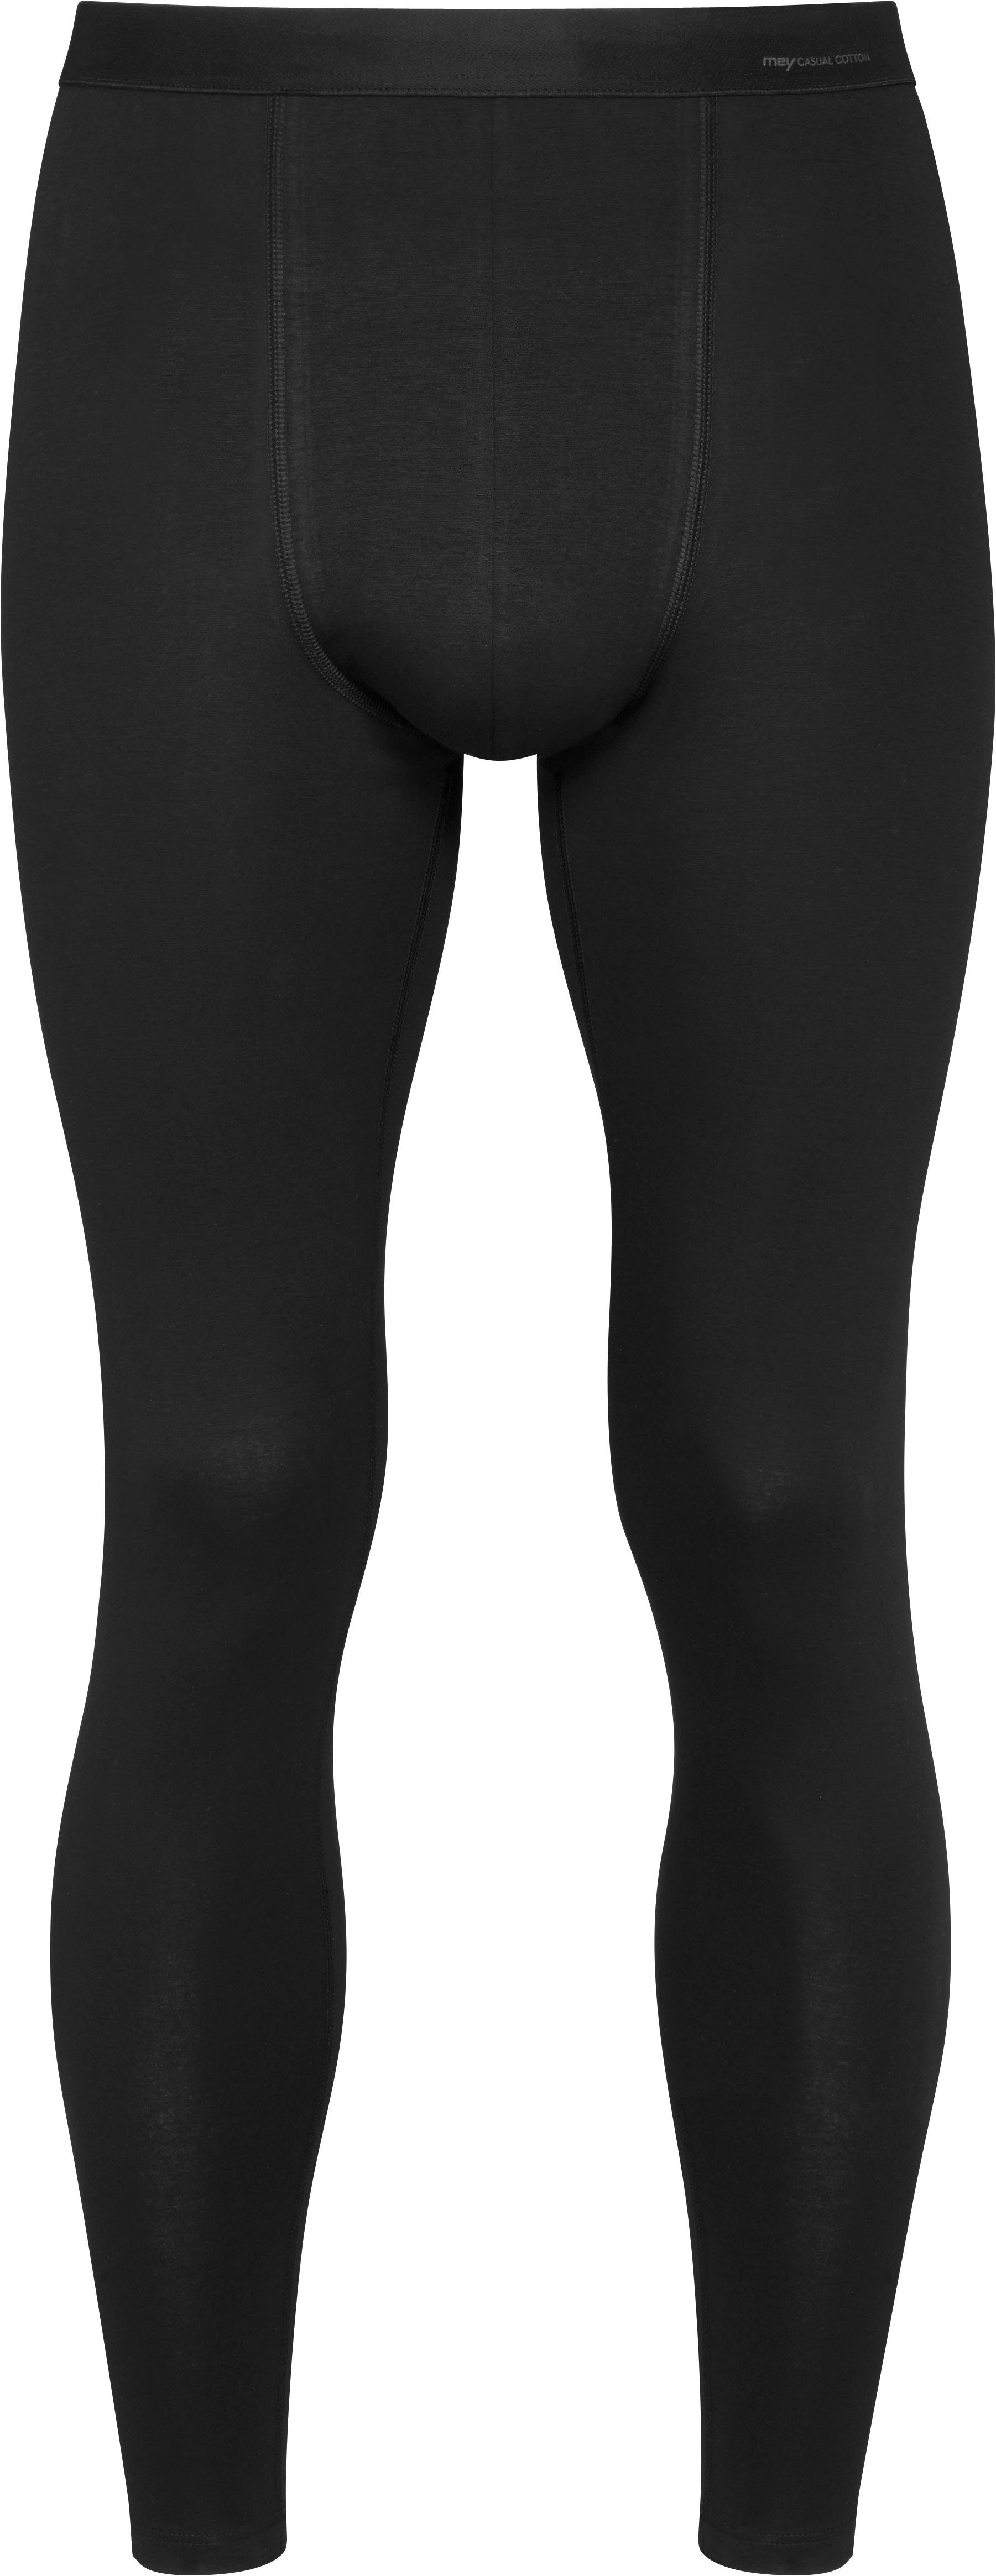 Mey Lange Unterhose schwarz körpernahe Casual Beinabschlüssen, Cotton mit weichen Passform